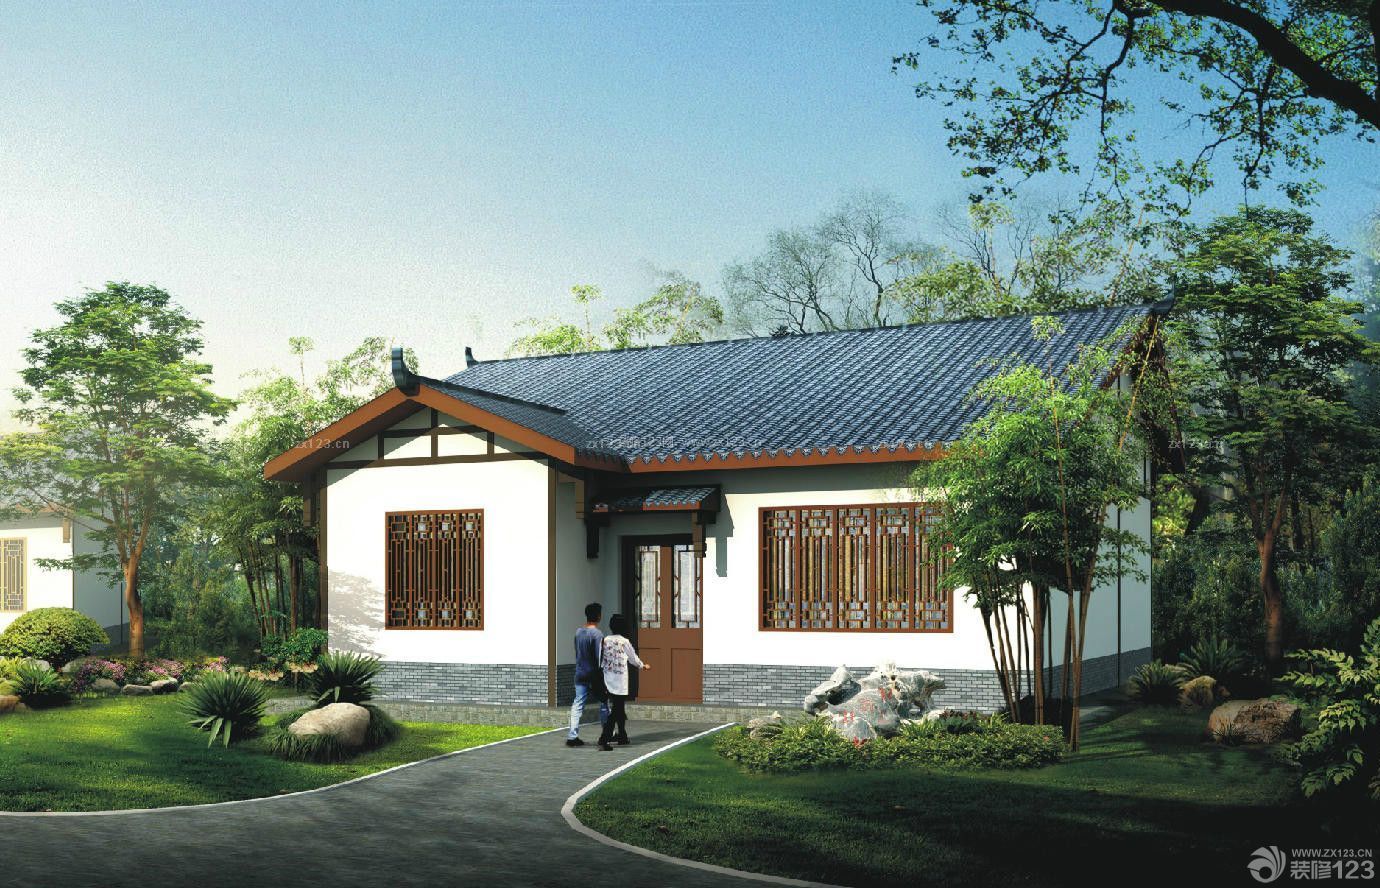 中式风格复古农村房屋设计图片大全